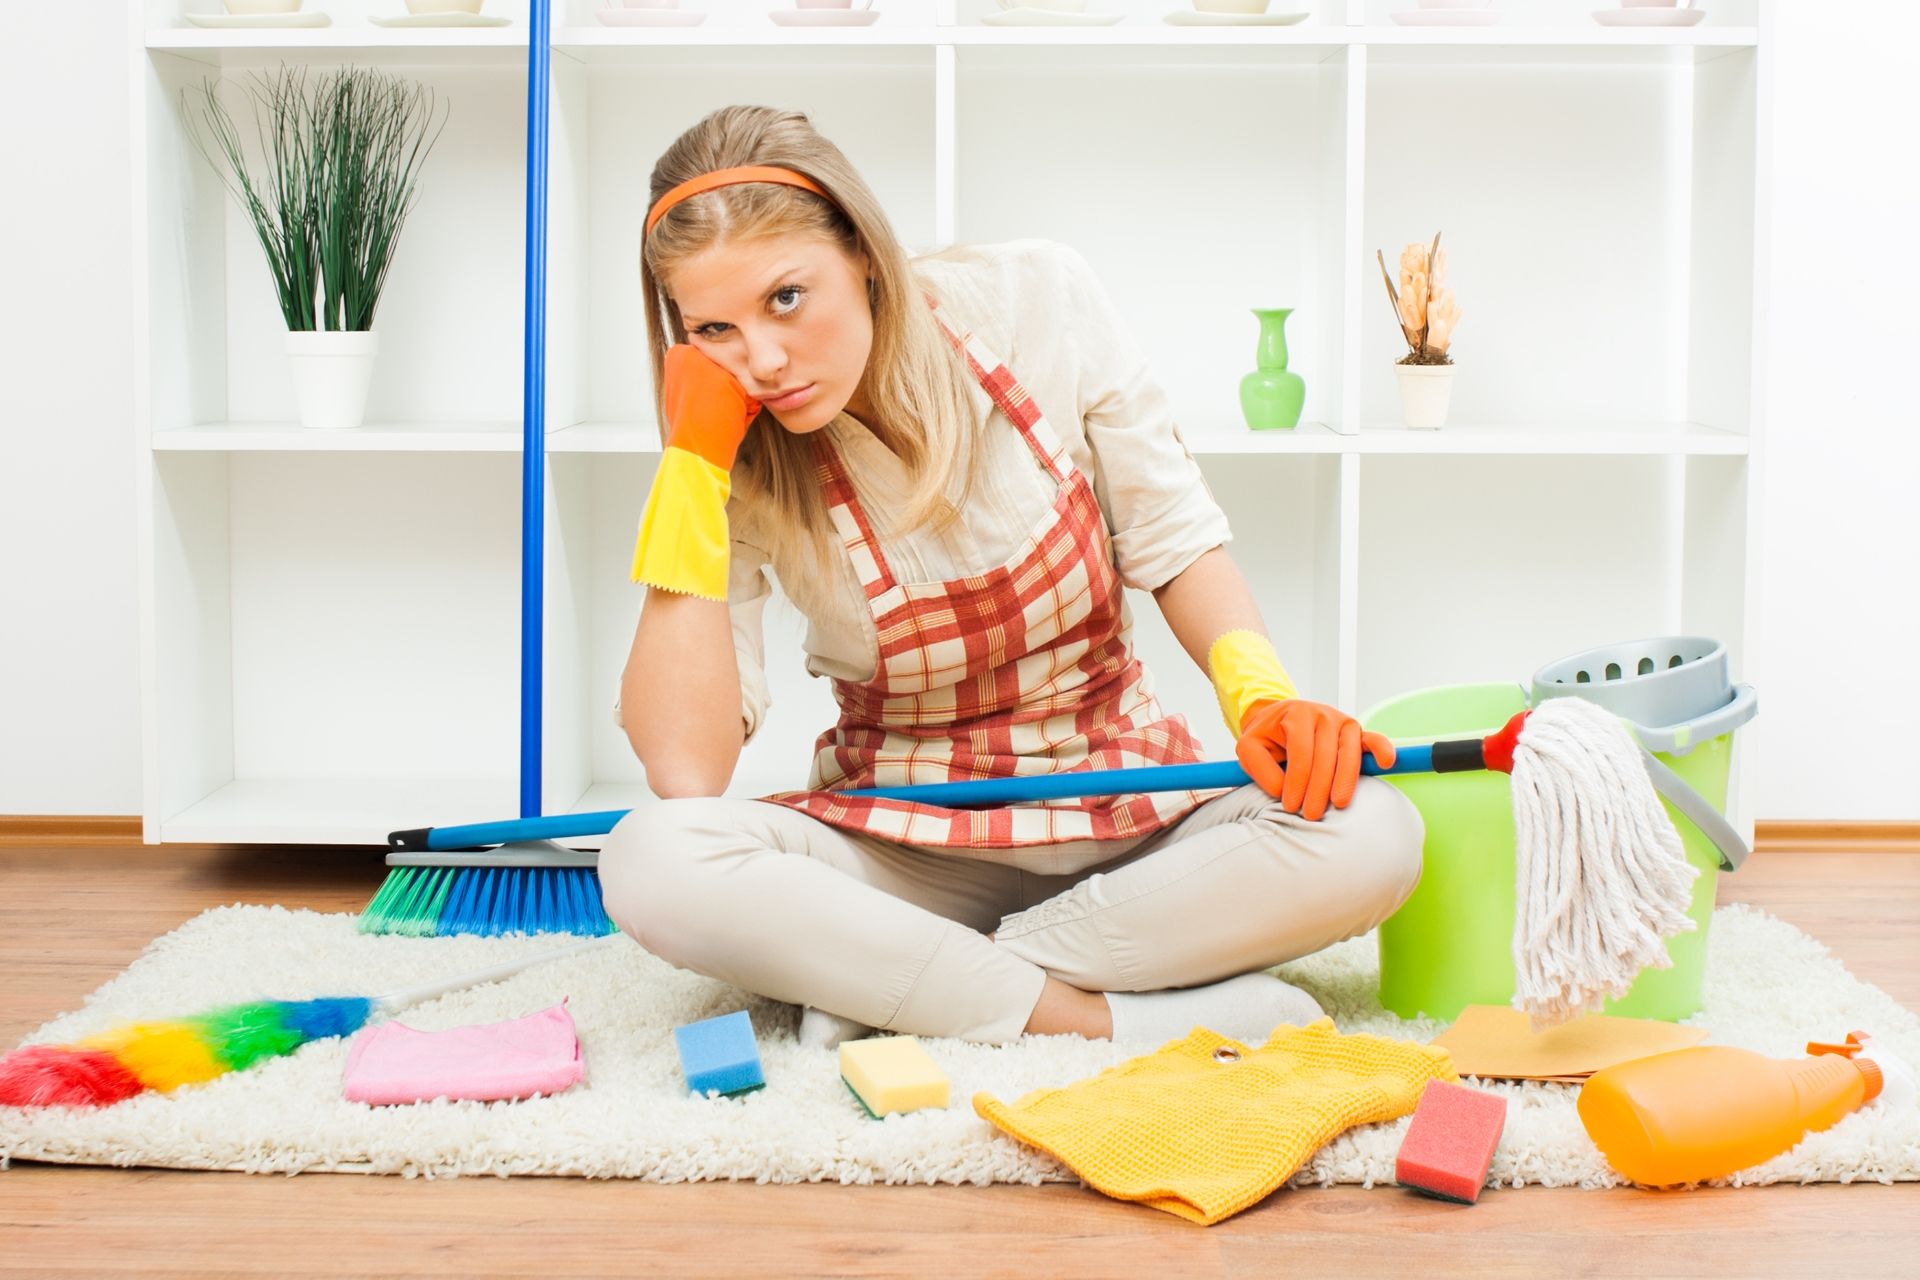 Уборка дома: я ради уборки или уборка ради меня?